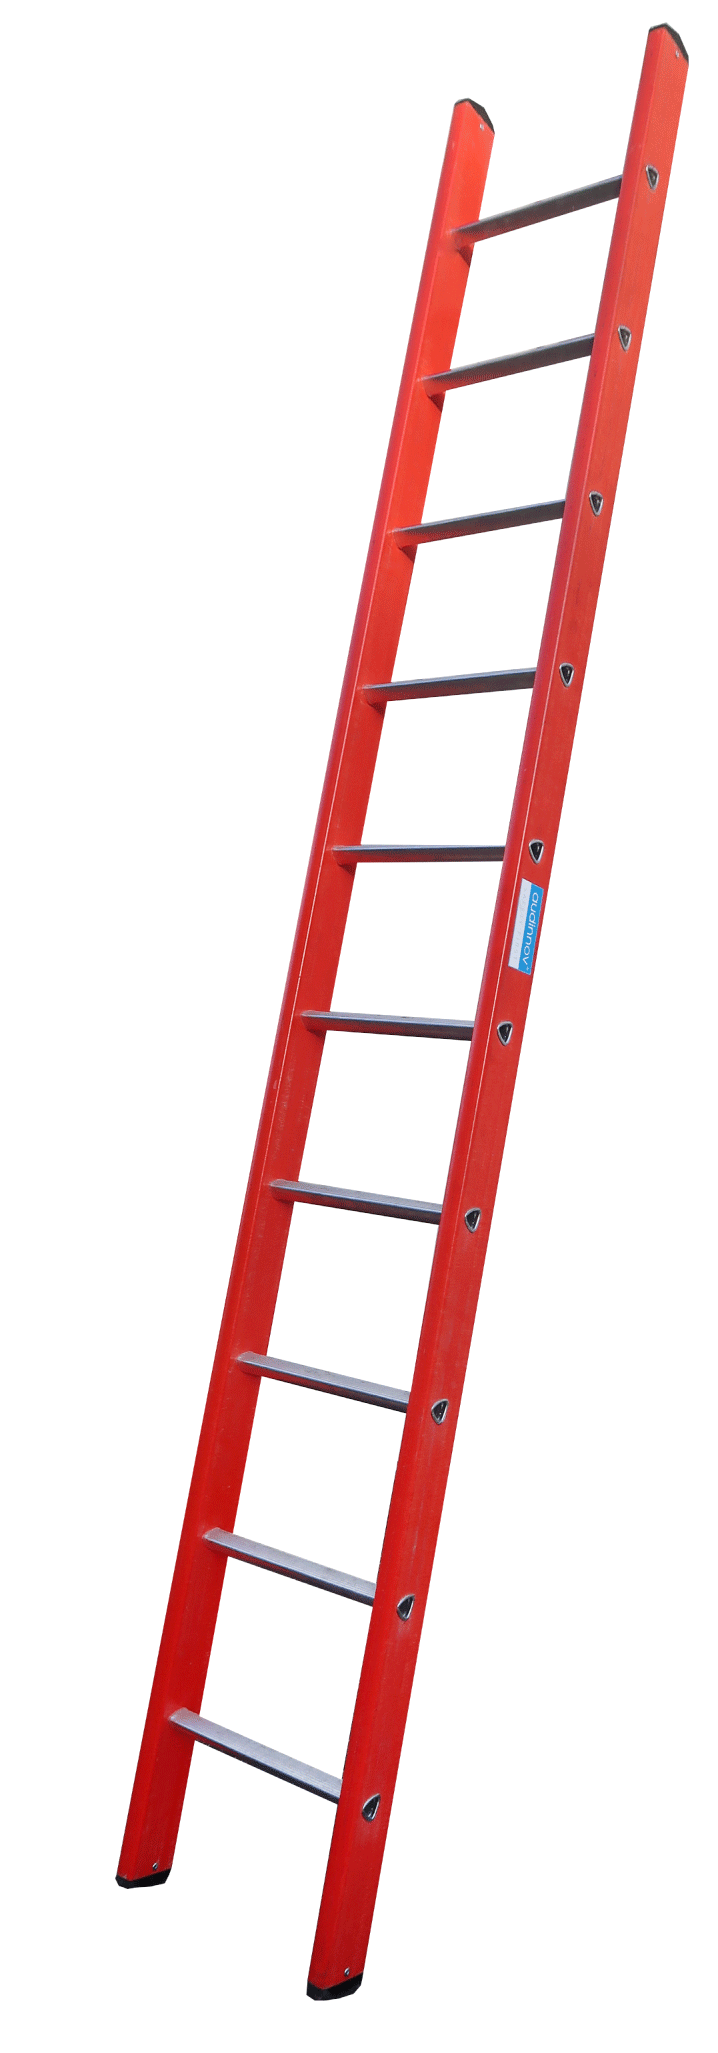 VSF : Insulating ladder